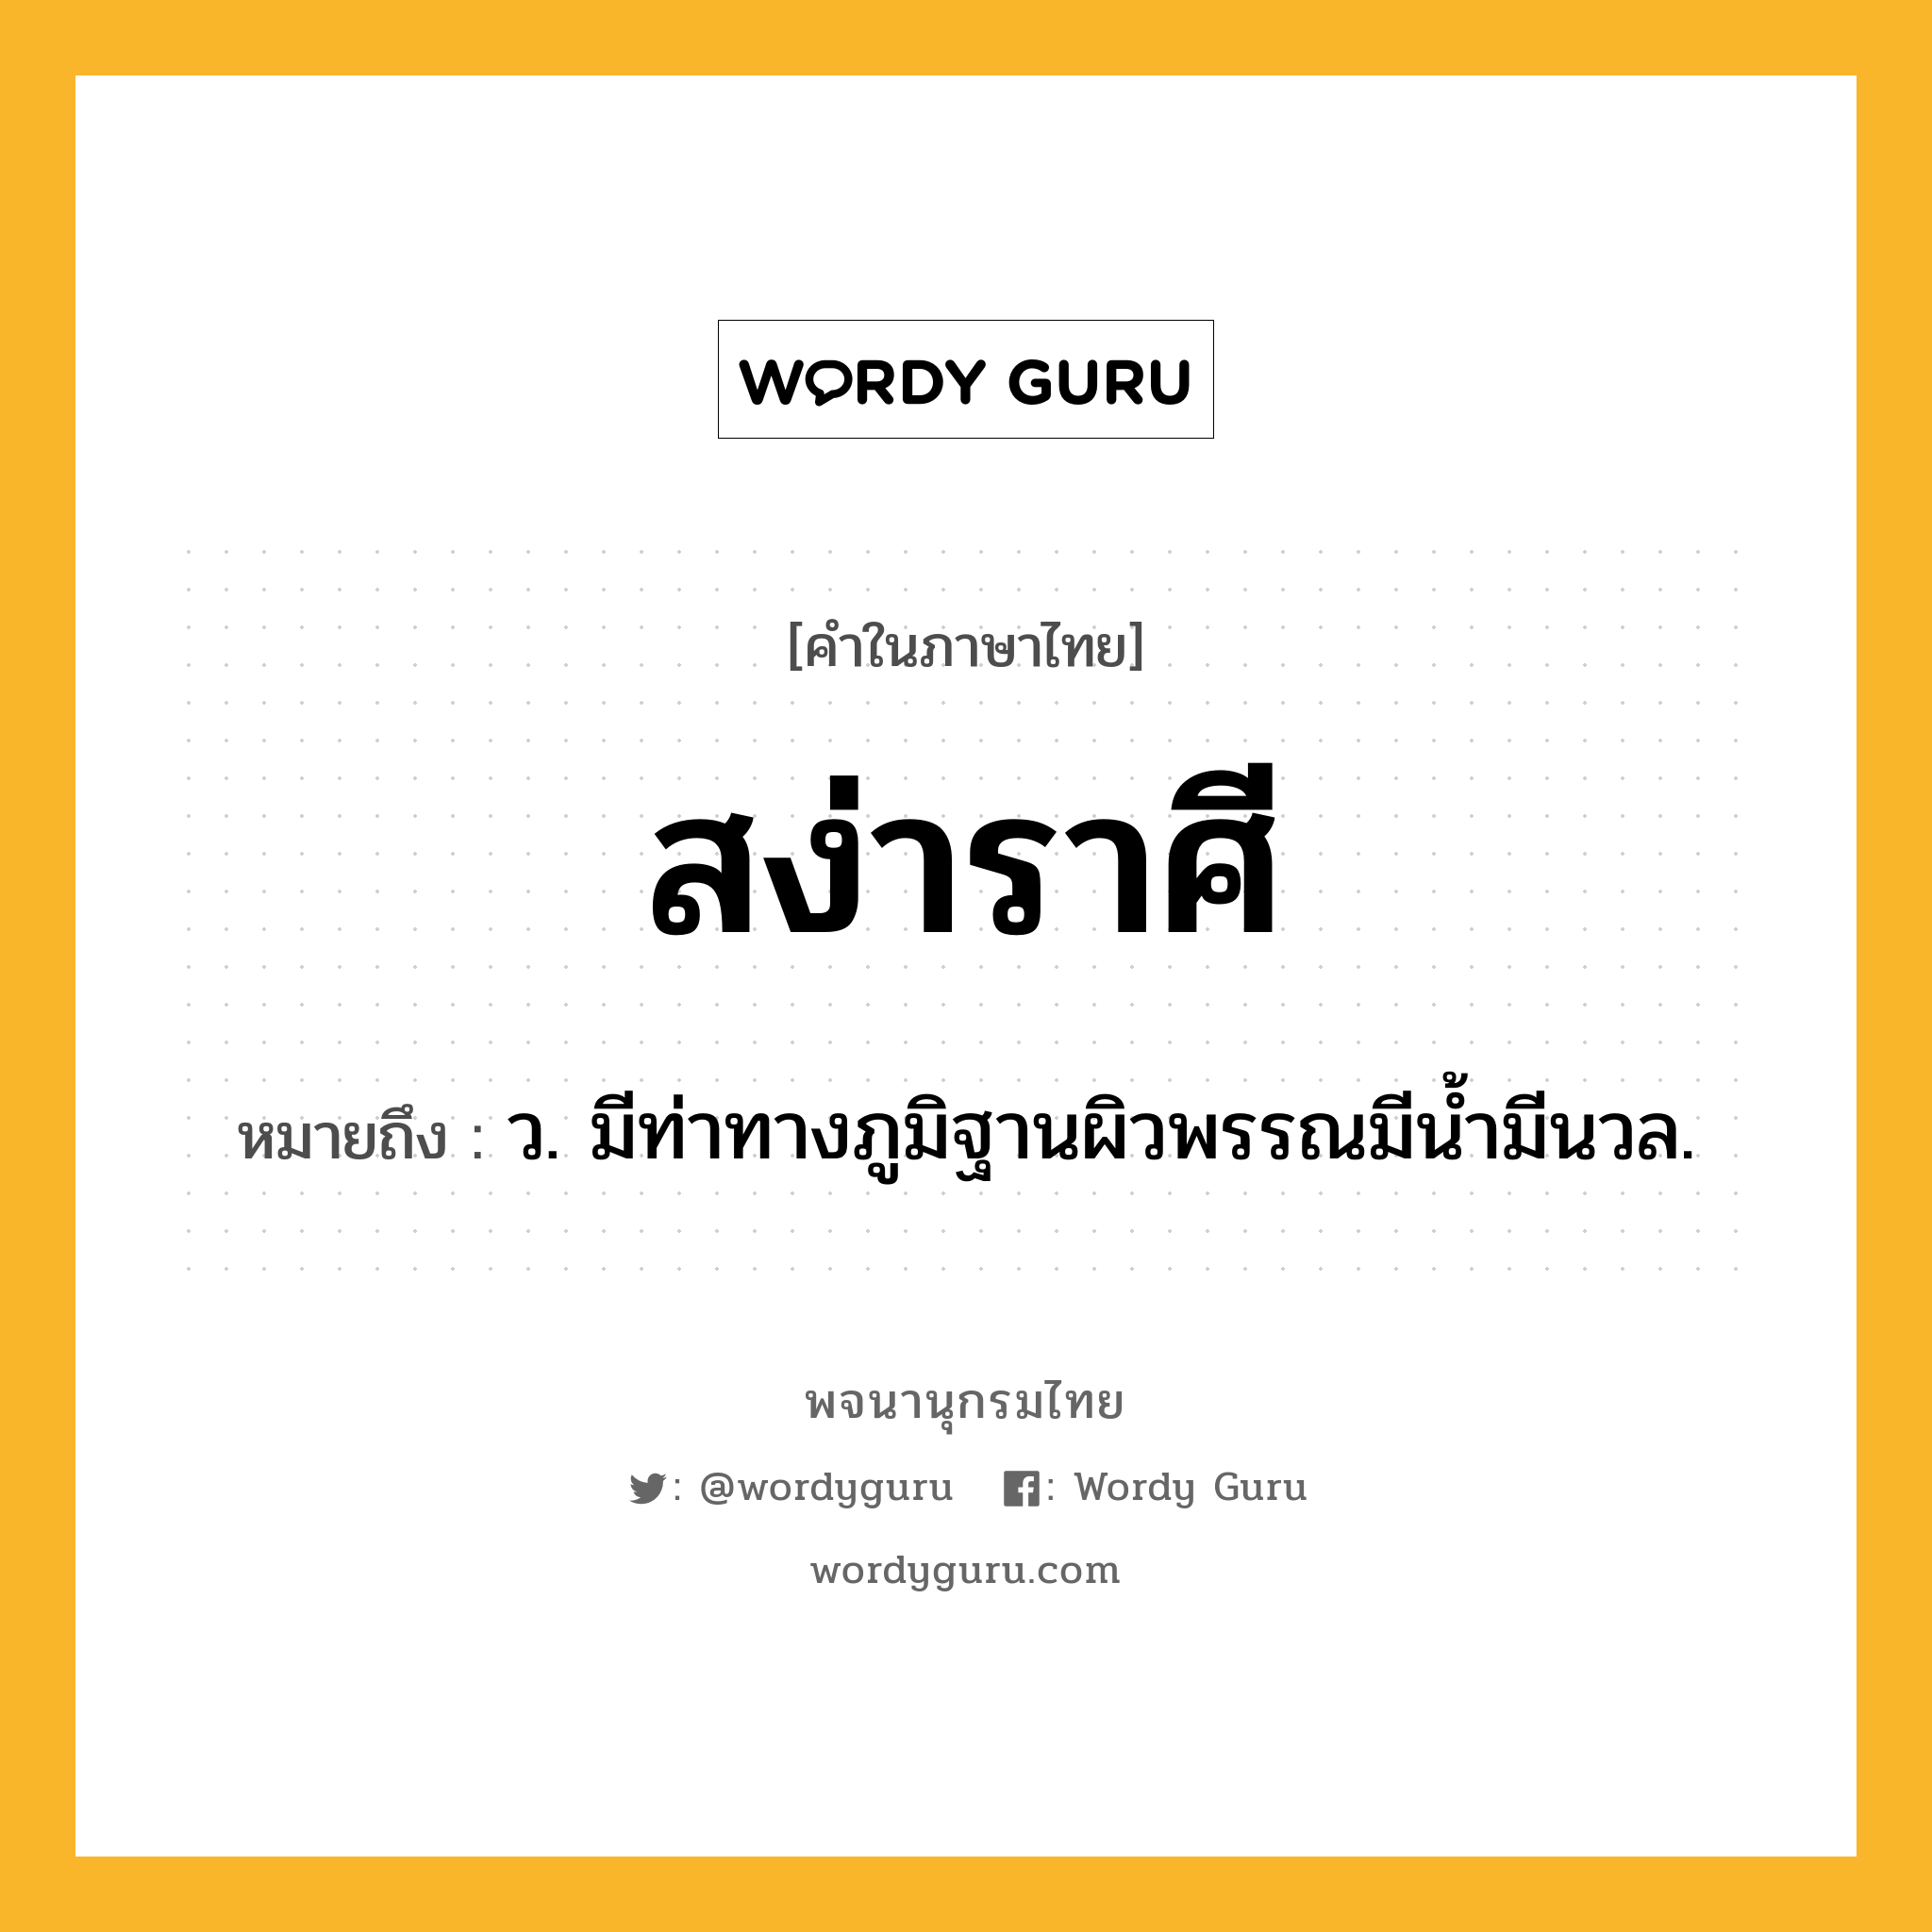 สง่าราศี ความหมาย หมายถึงอะไร?, คำในภาษาไทย สง่าราศี หมายถึง ว. มีท่าทางภูมิฐานผิวพรรณมีน้ำมีนวล.